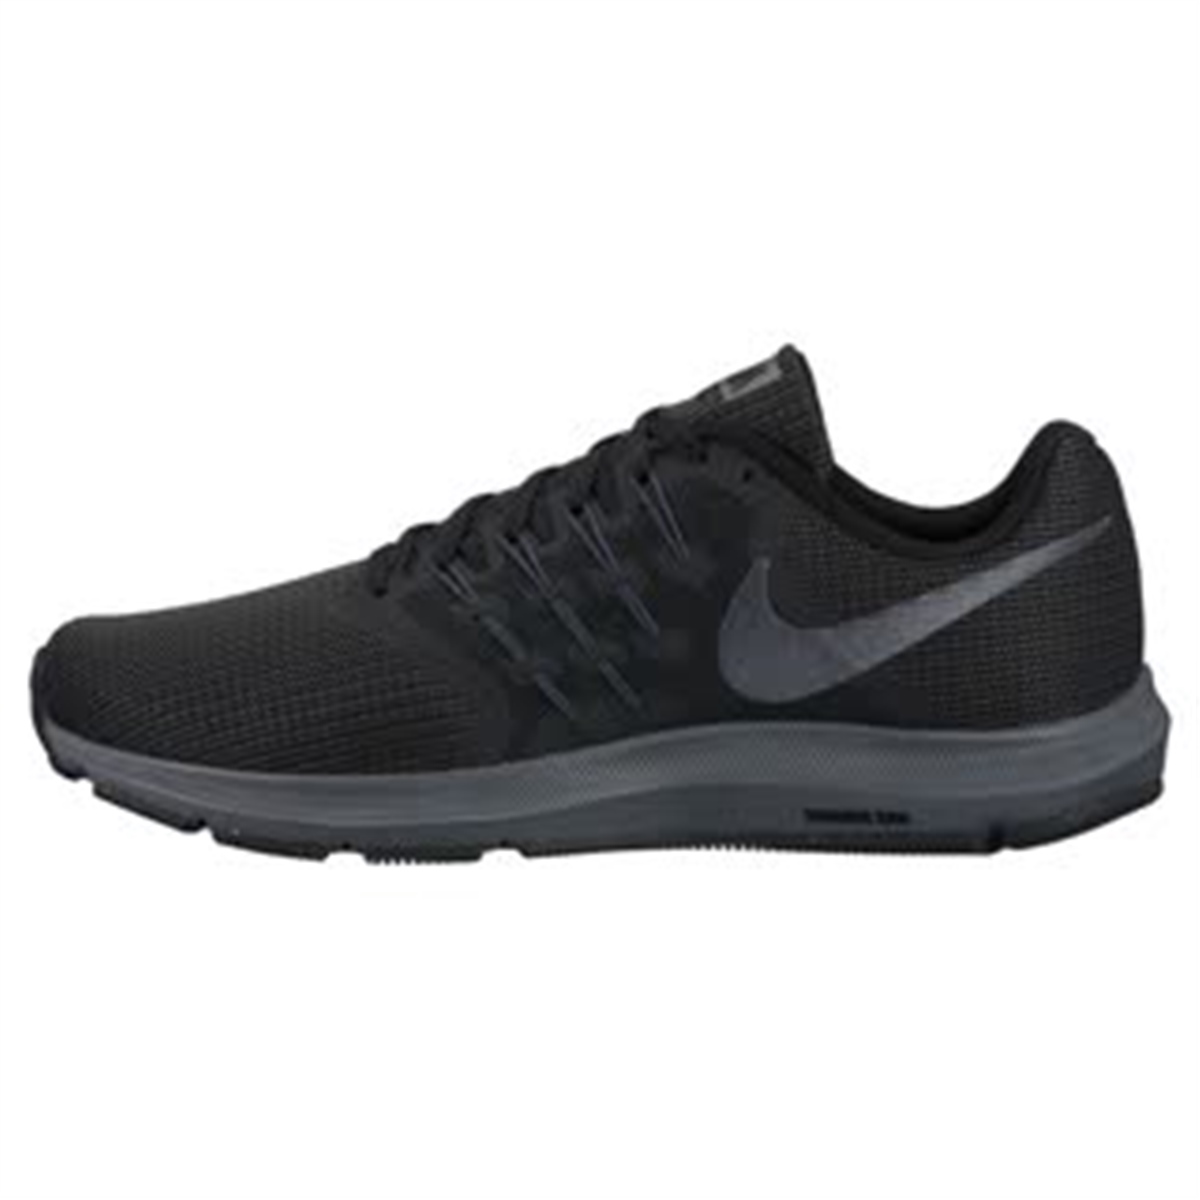 Nike Run Swift Erkek Koşu Ayakkabısı Ürün kodu: 908989-010 | Etichet Sport